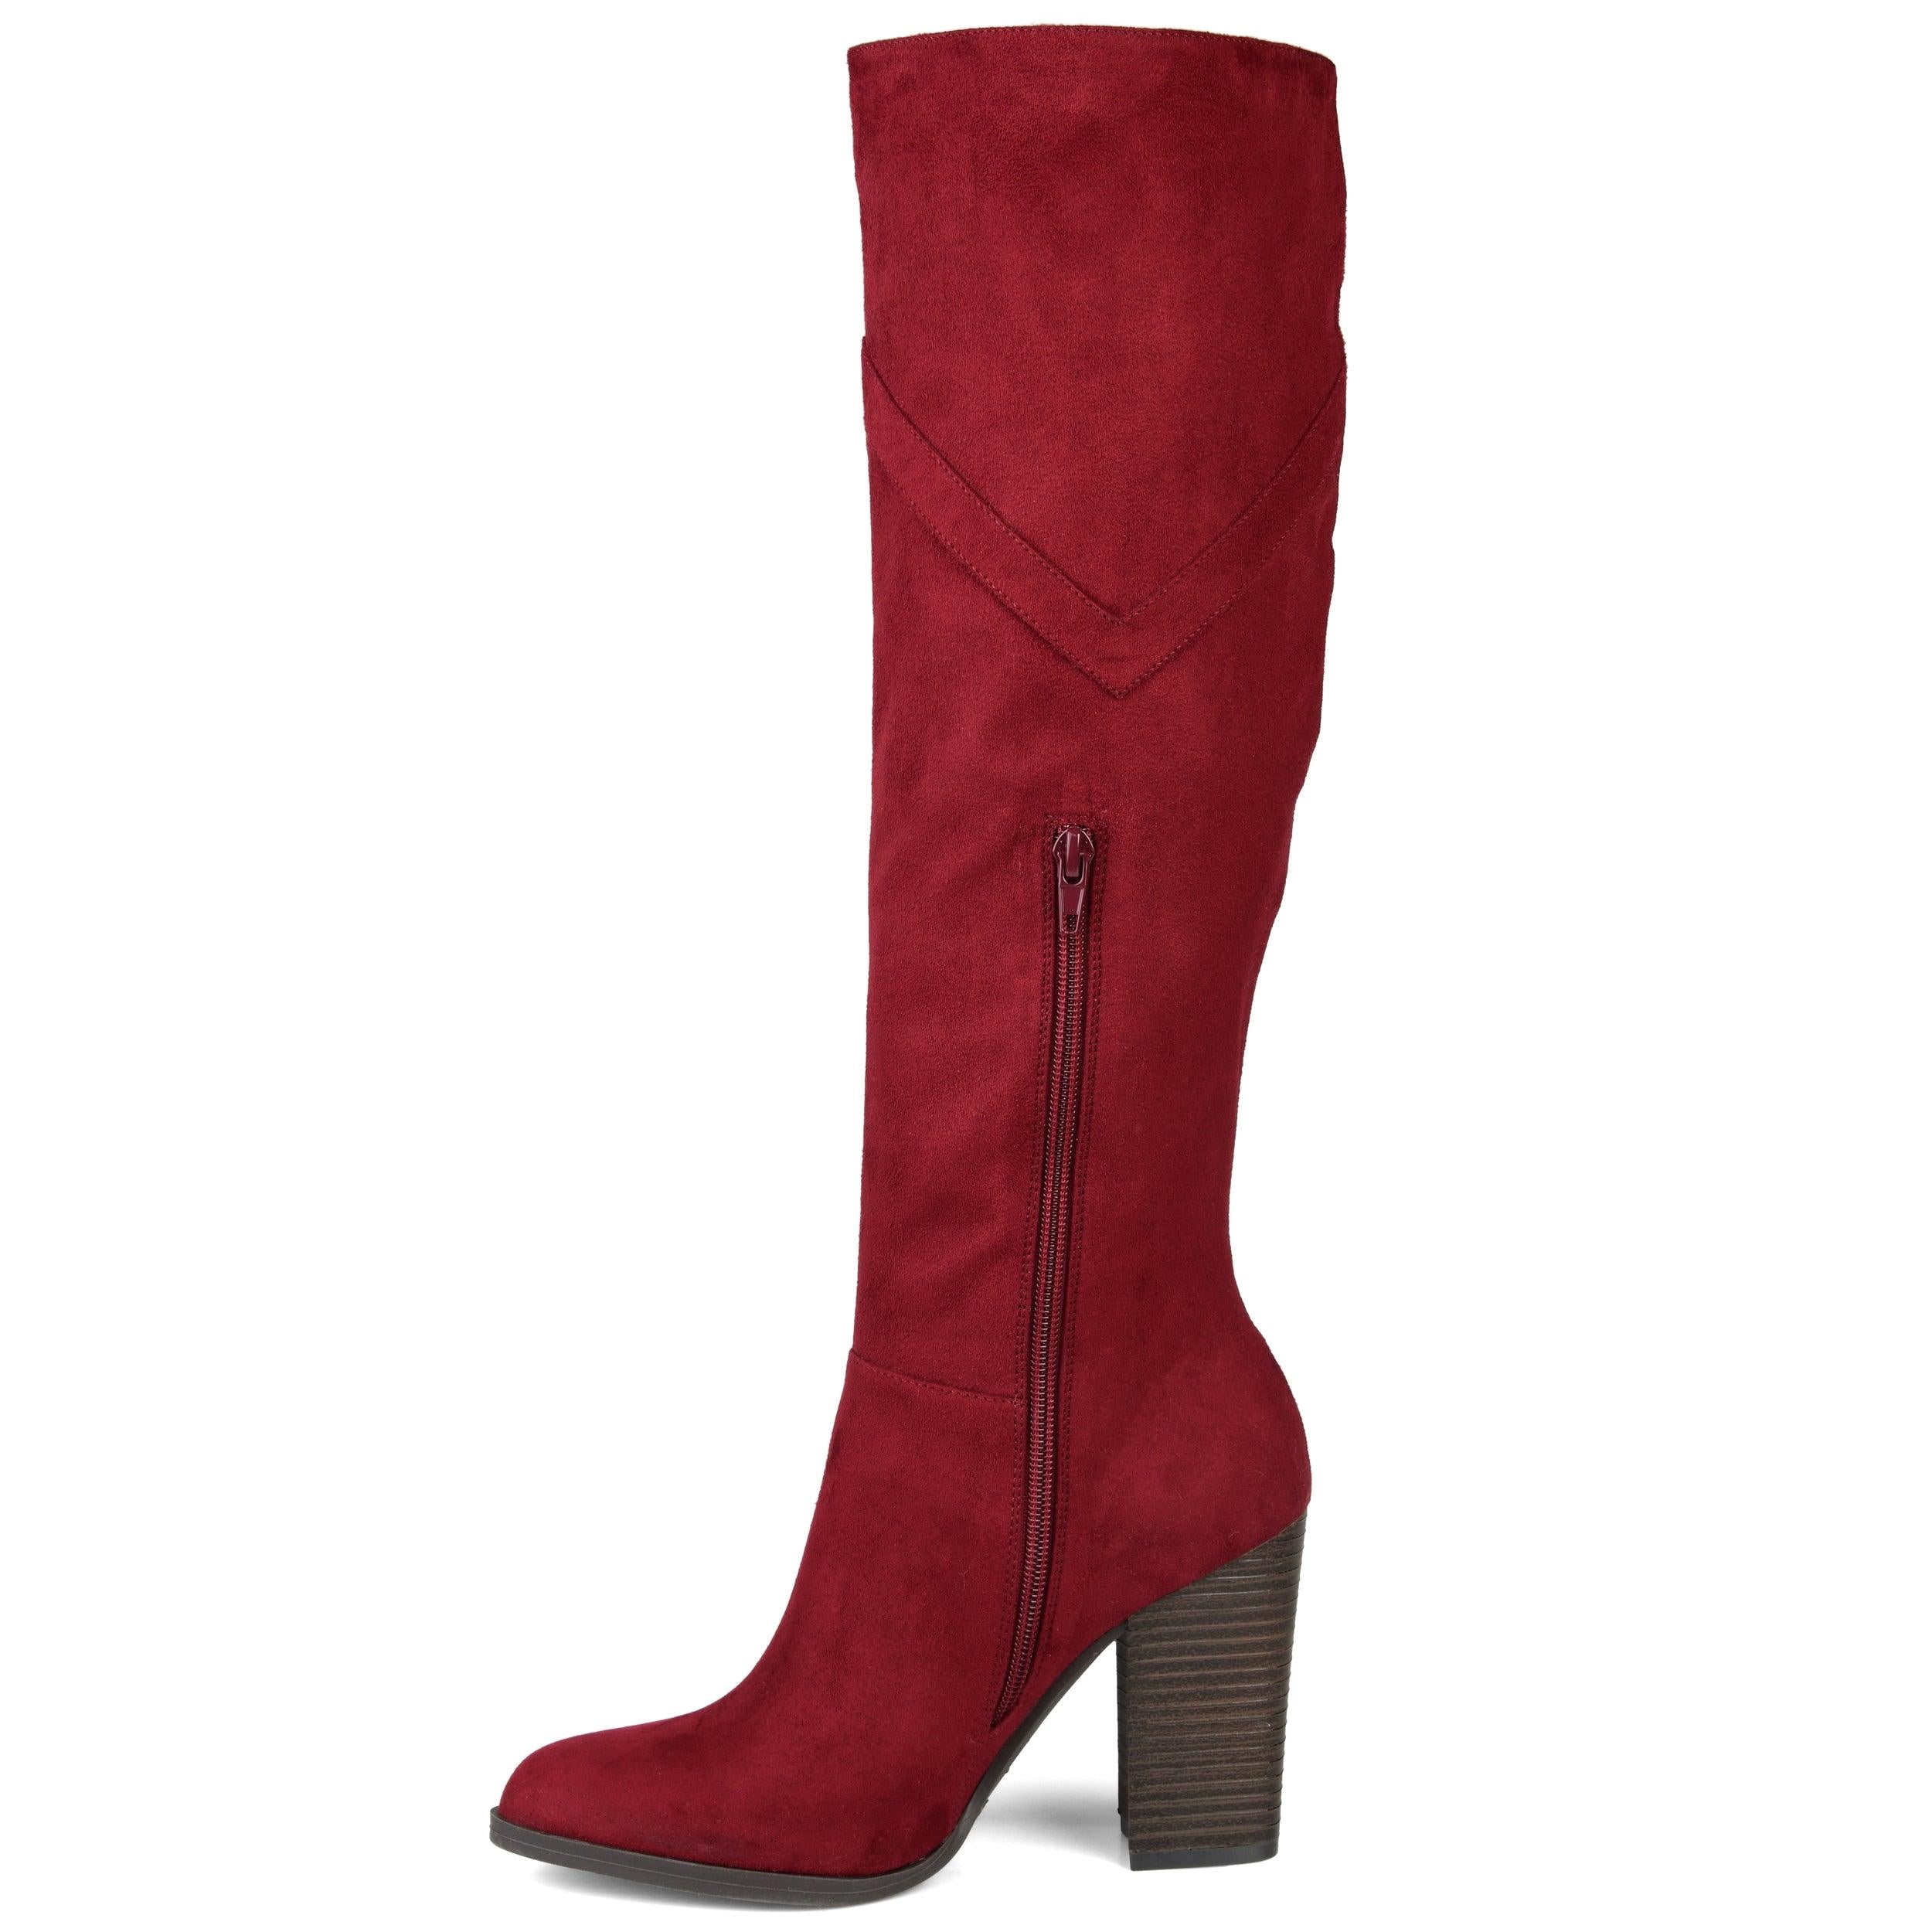 Kyllie Boot | Women's Blovk Heel Boots | Journee Collection